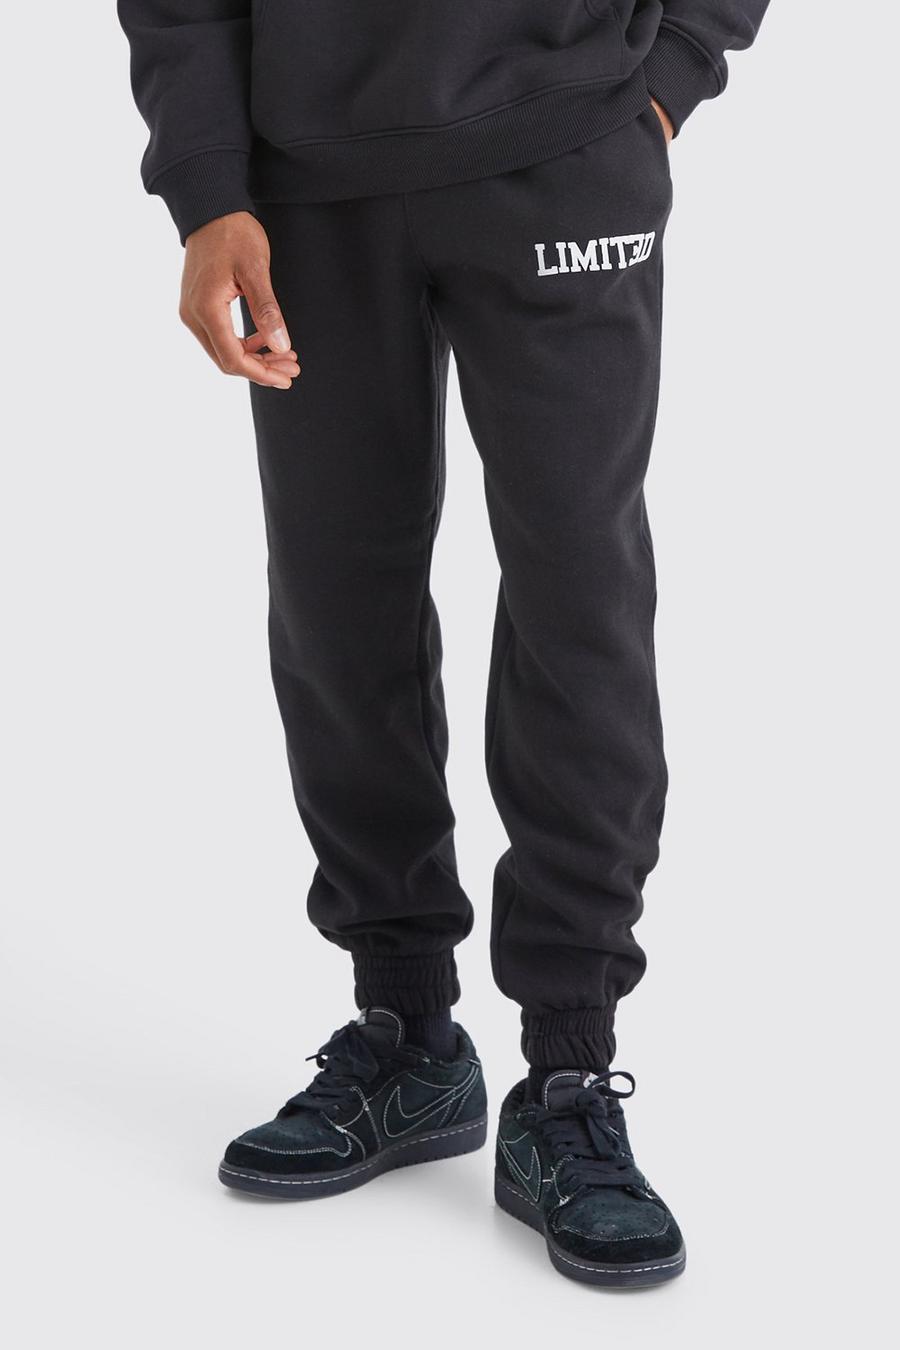 Pantalón deportivo Regular Limited, Black